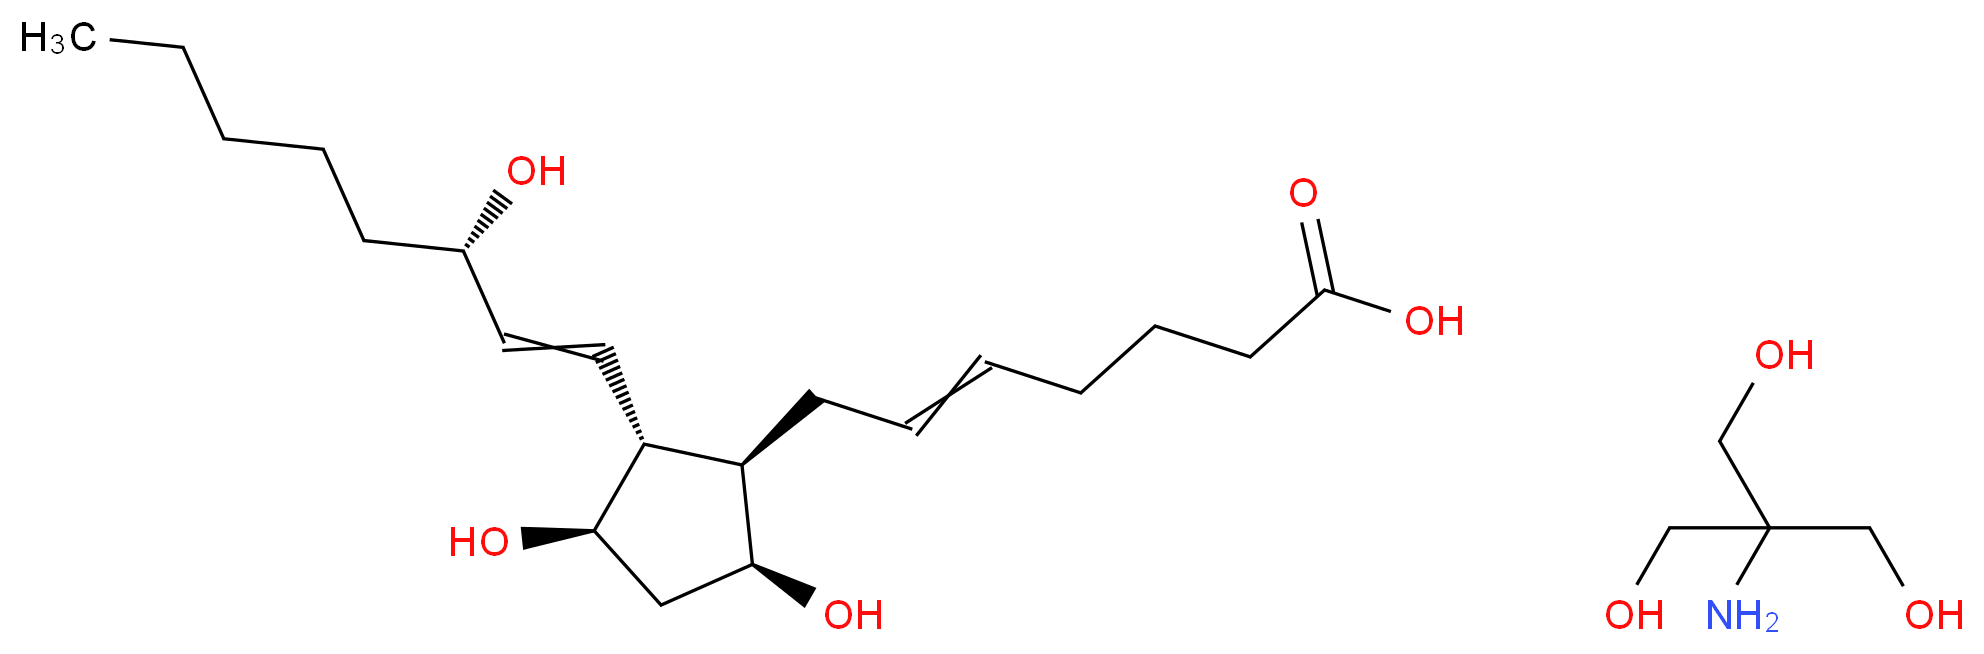 2-amino-2-(hydroxymethyl)propane-1,3-diol; 7-[(1R,2R,3R,5S)-3,5-dihydroxy-2-[(3S)-3-hydroxyoct-1-en-1-yl]cyclopentyl]hept-5-enoic acid_分子结构_CAS_38562-01-5